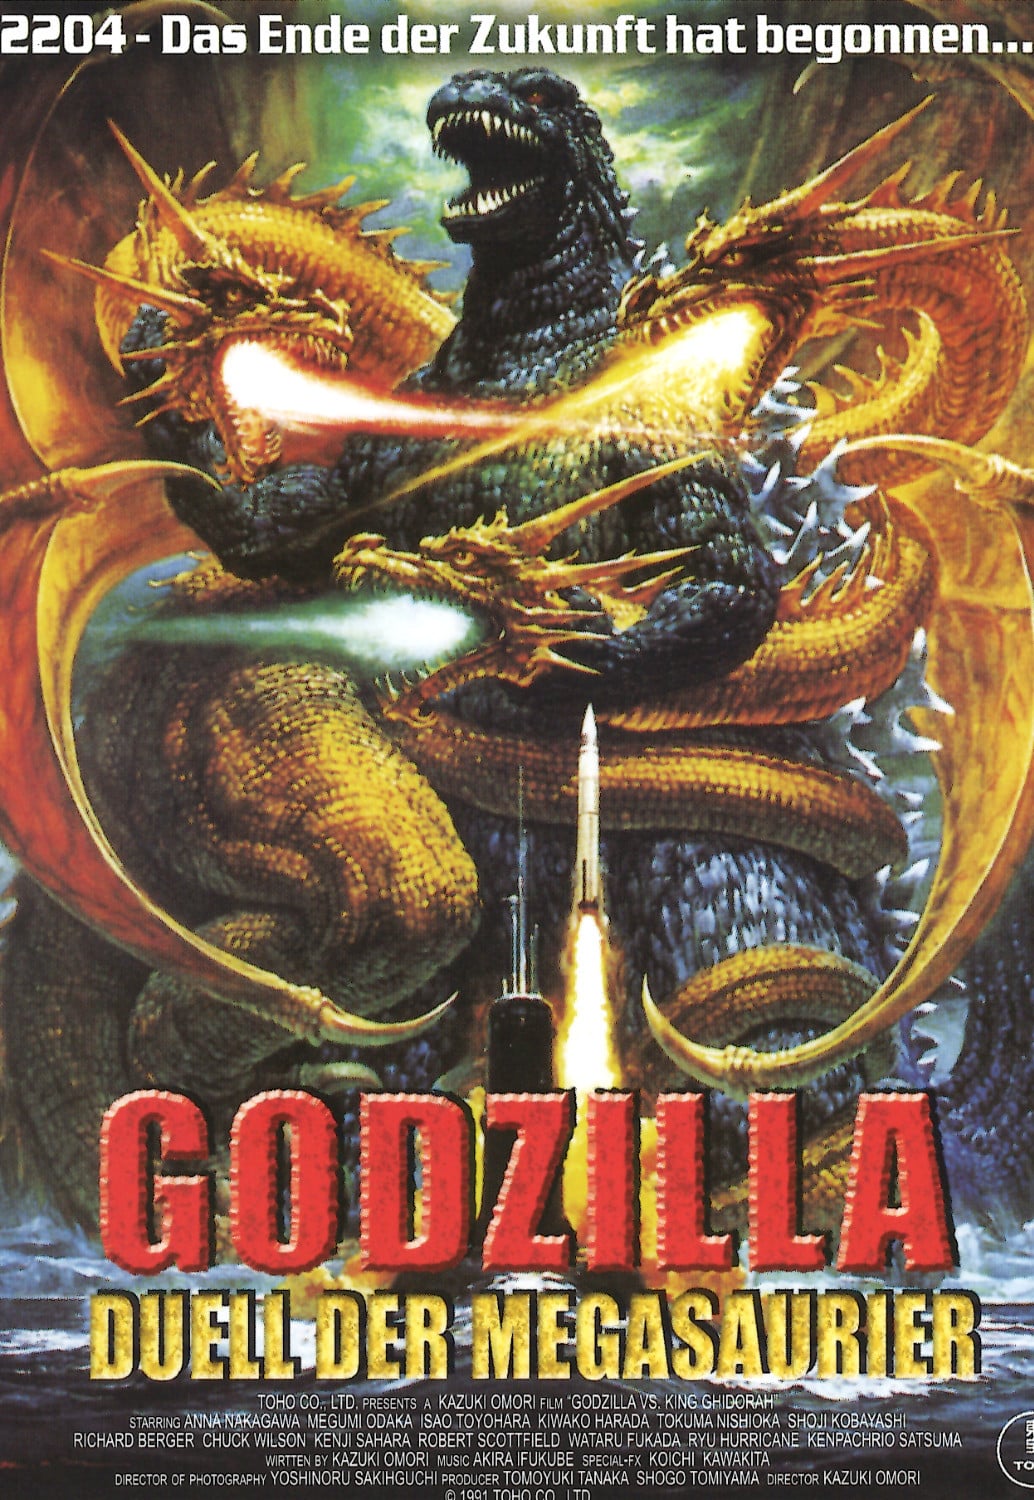 Plakat von "Godzilla - Duell der Megasaurier"